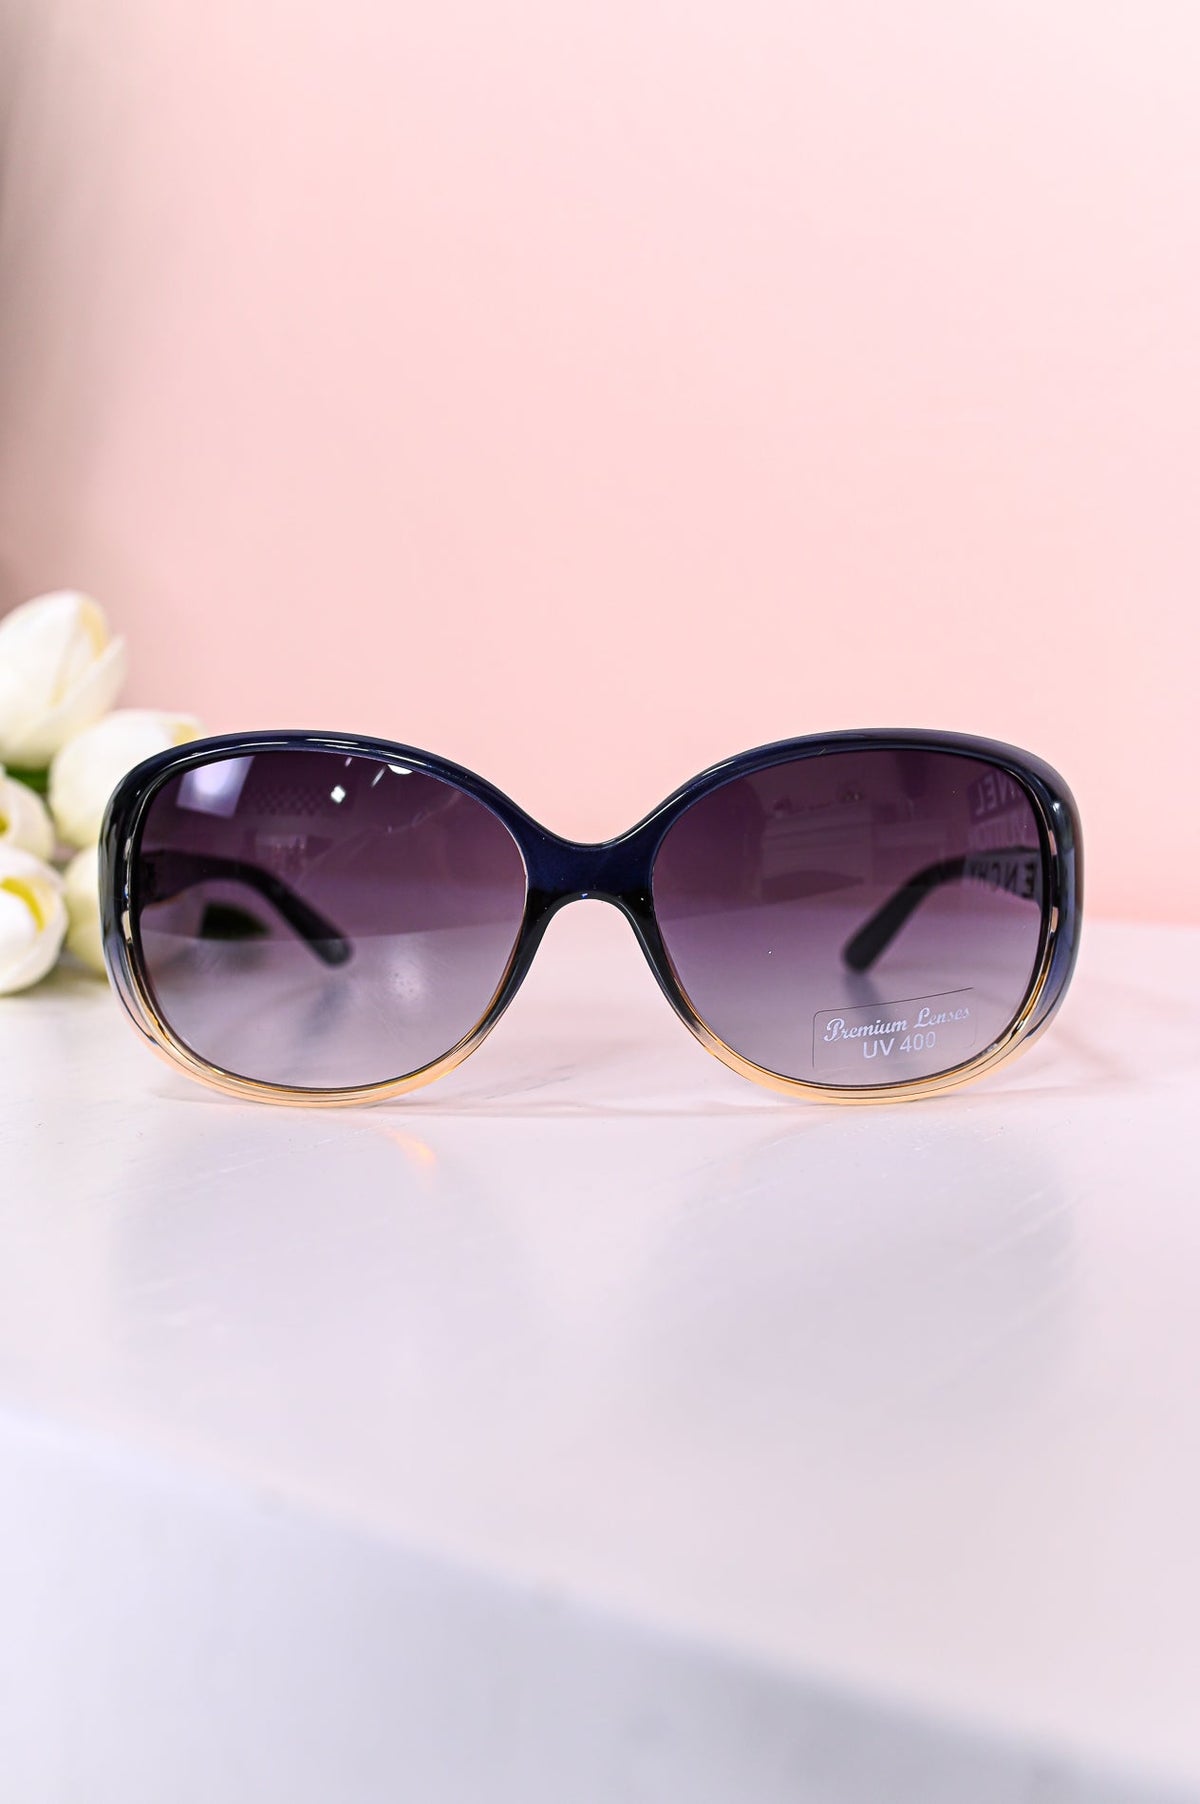 Black/Silver/Gold Printed Retro Lens Sunglasses - SGL341SI